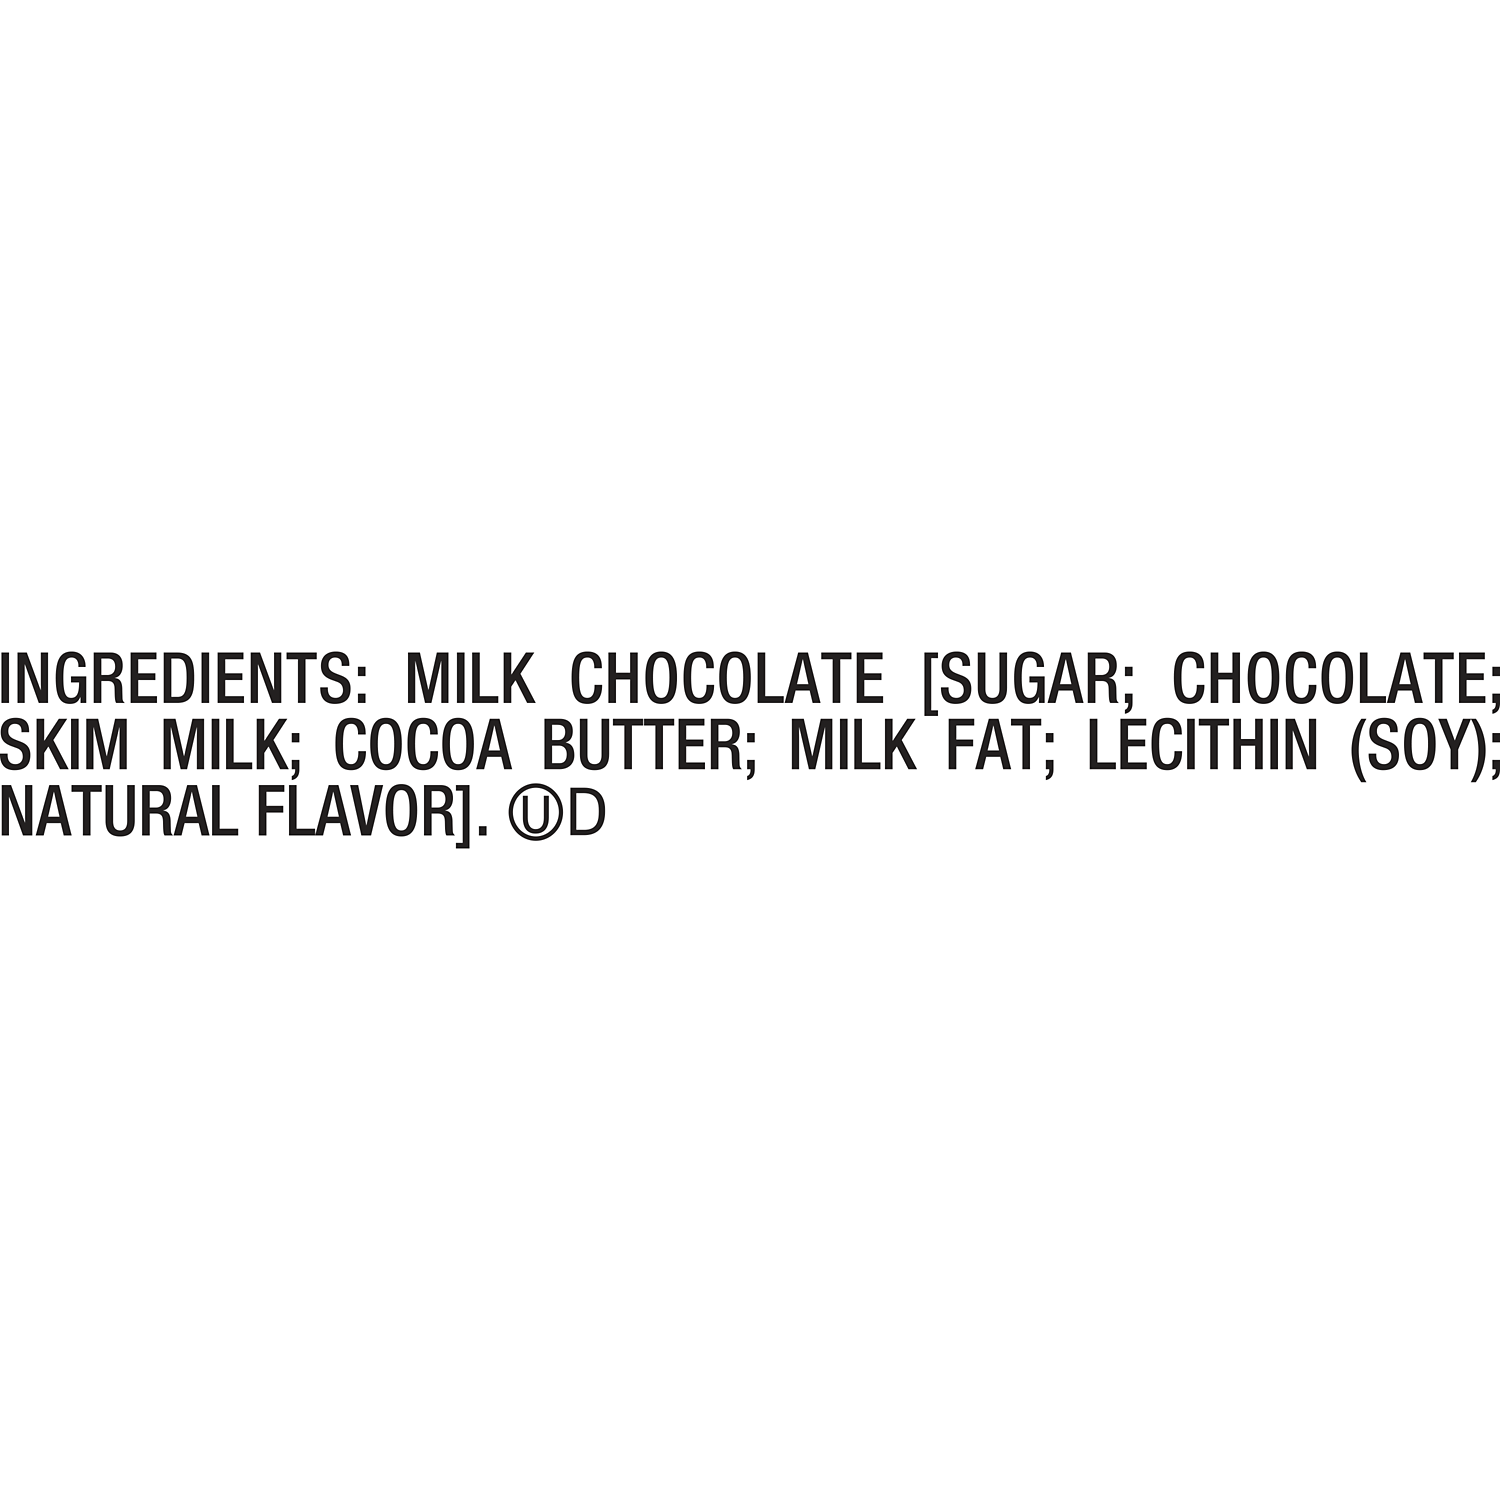 HERSHEY'S Milk Chocolate Chips, 11.5 oz bag - Ingredients